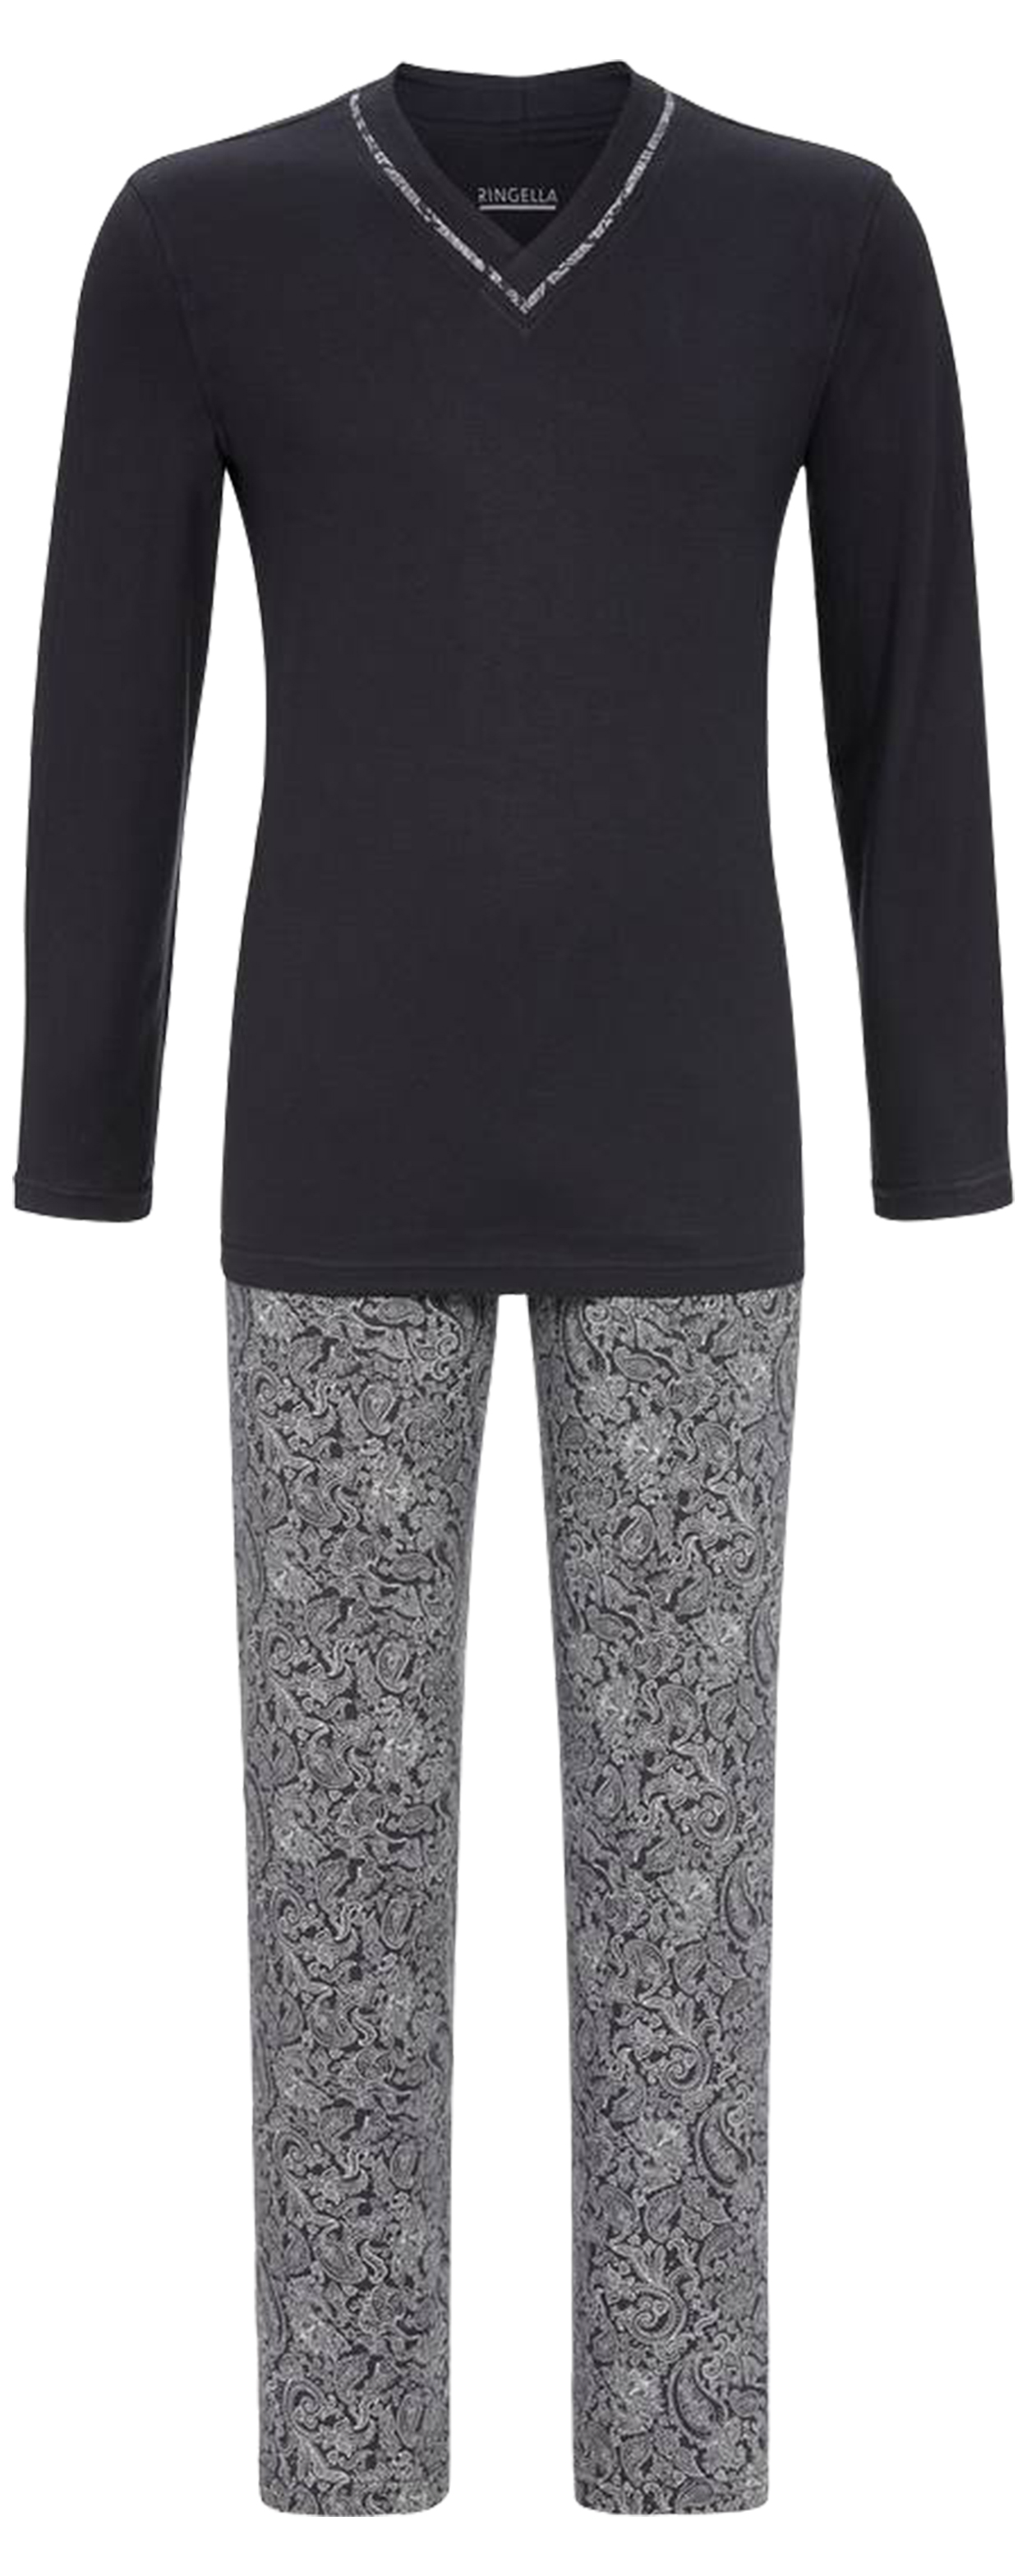 Pyjama long Ringella en coton : tee-shirt manches longues et col v anthracite et pantalon à motif pa